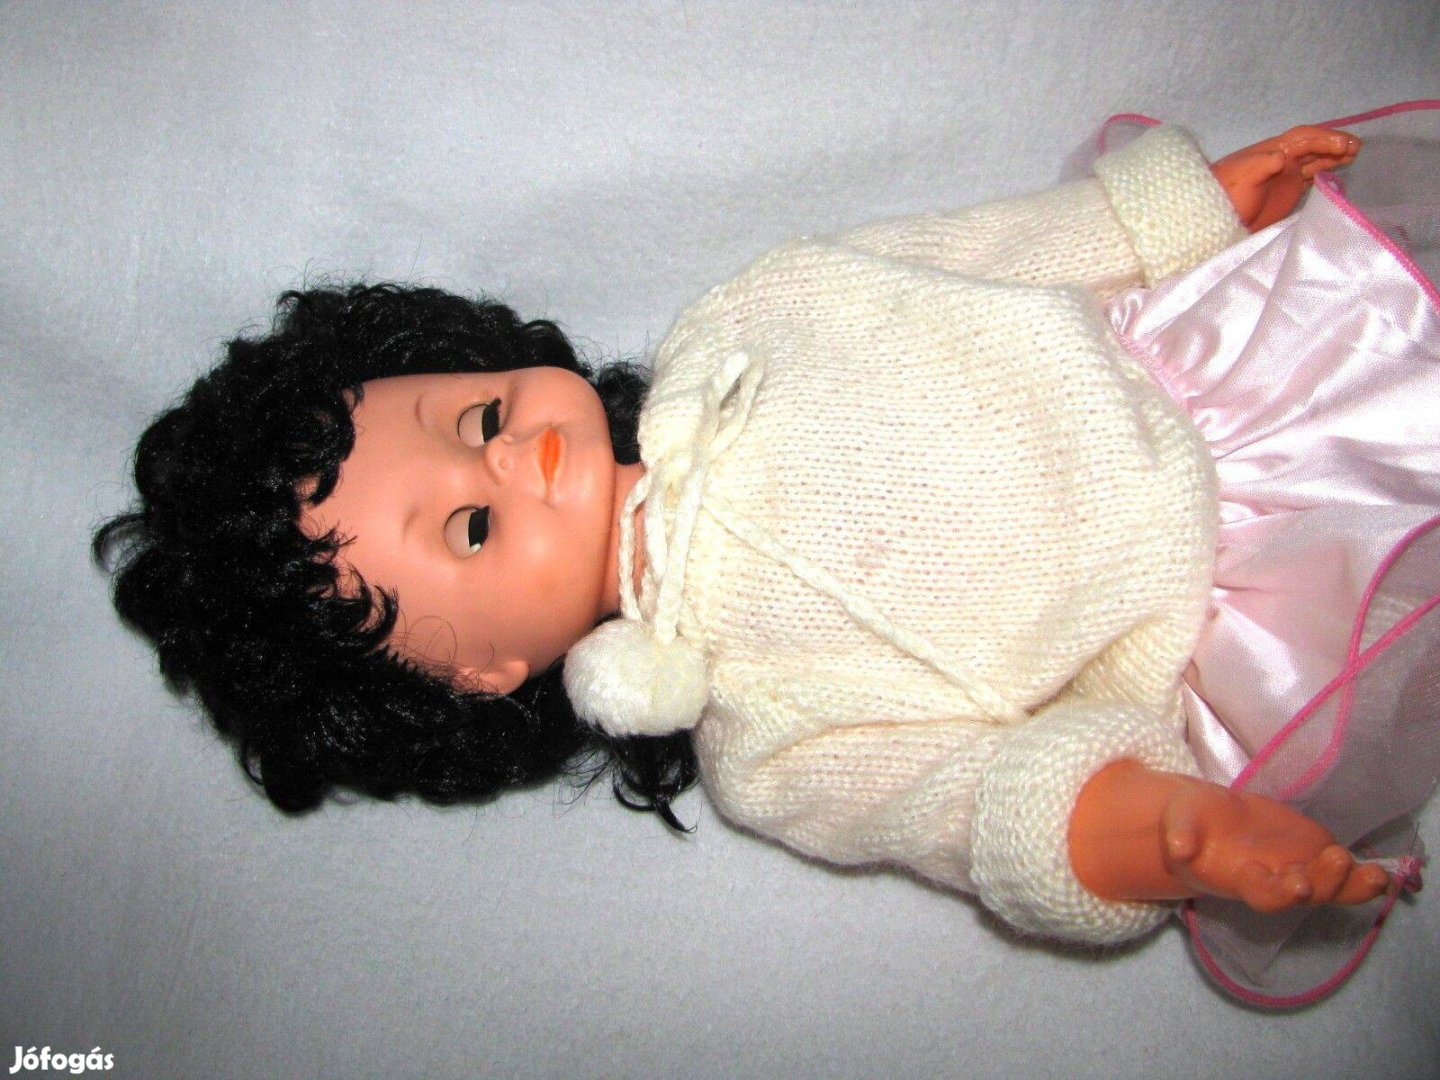 Játékbaba 60cm hangot adó, léptethető, gyönyörű, fekete dús hajú